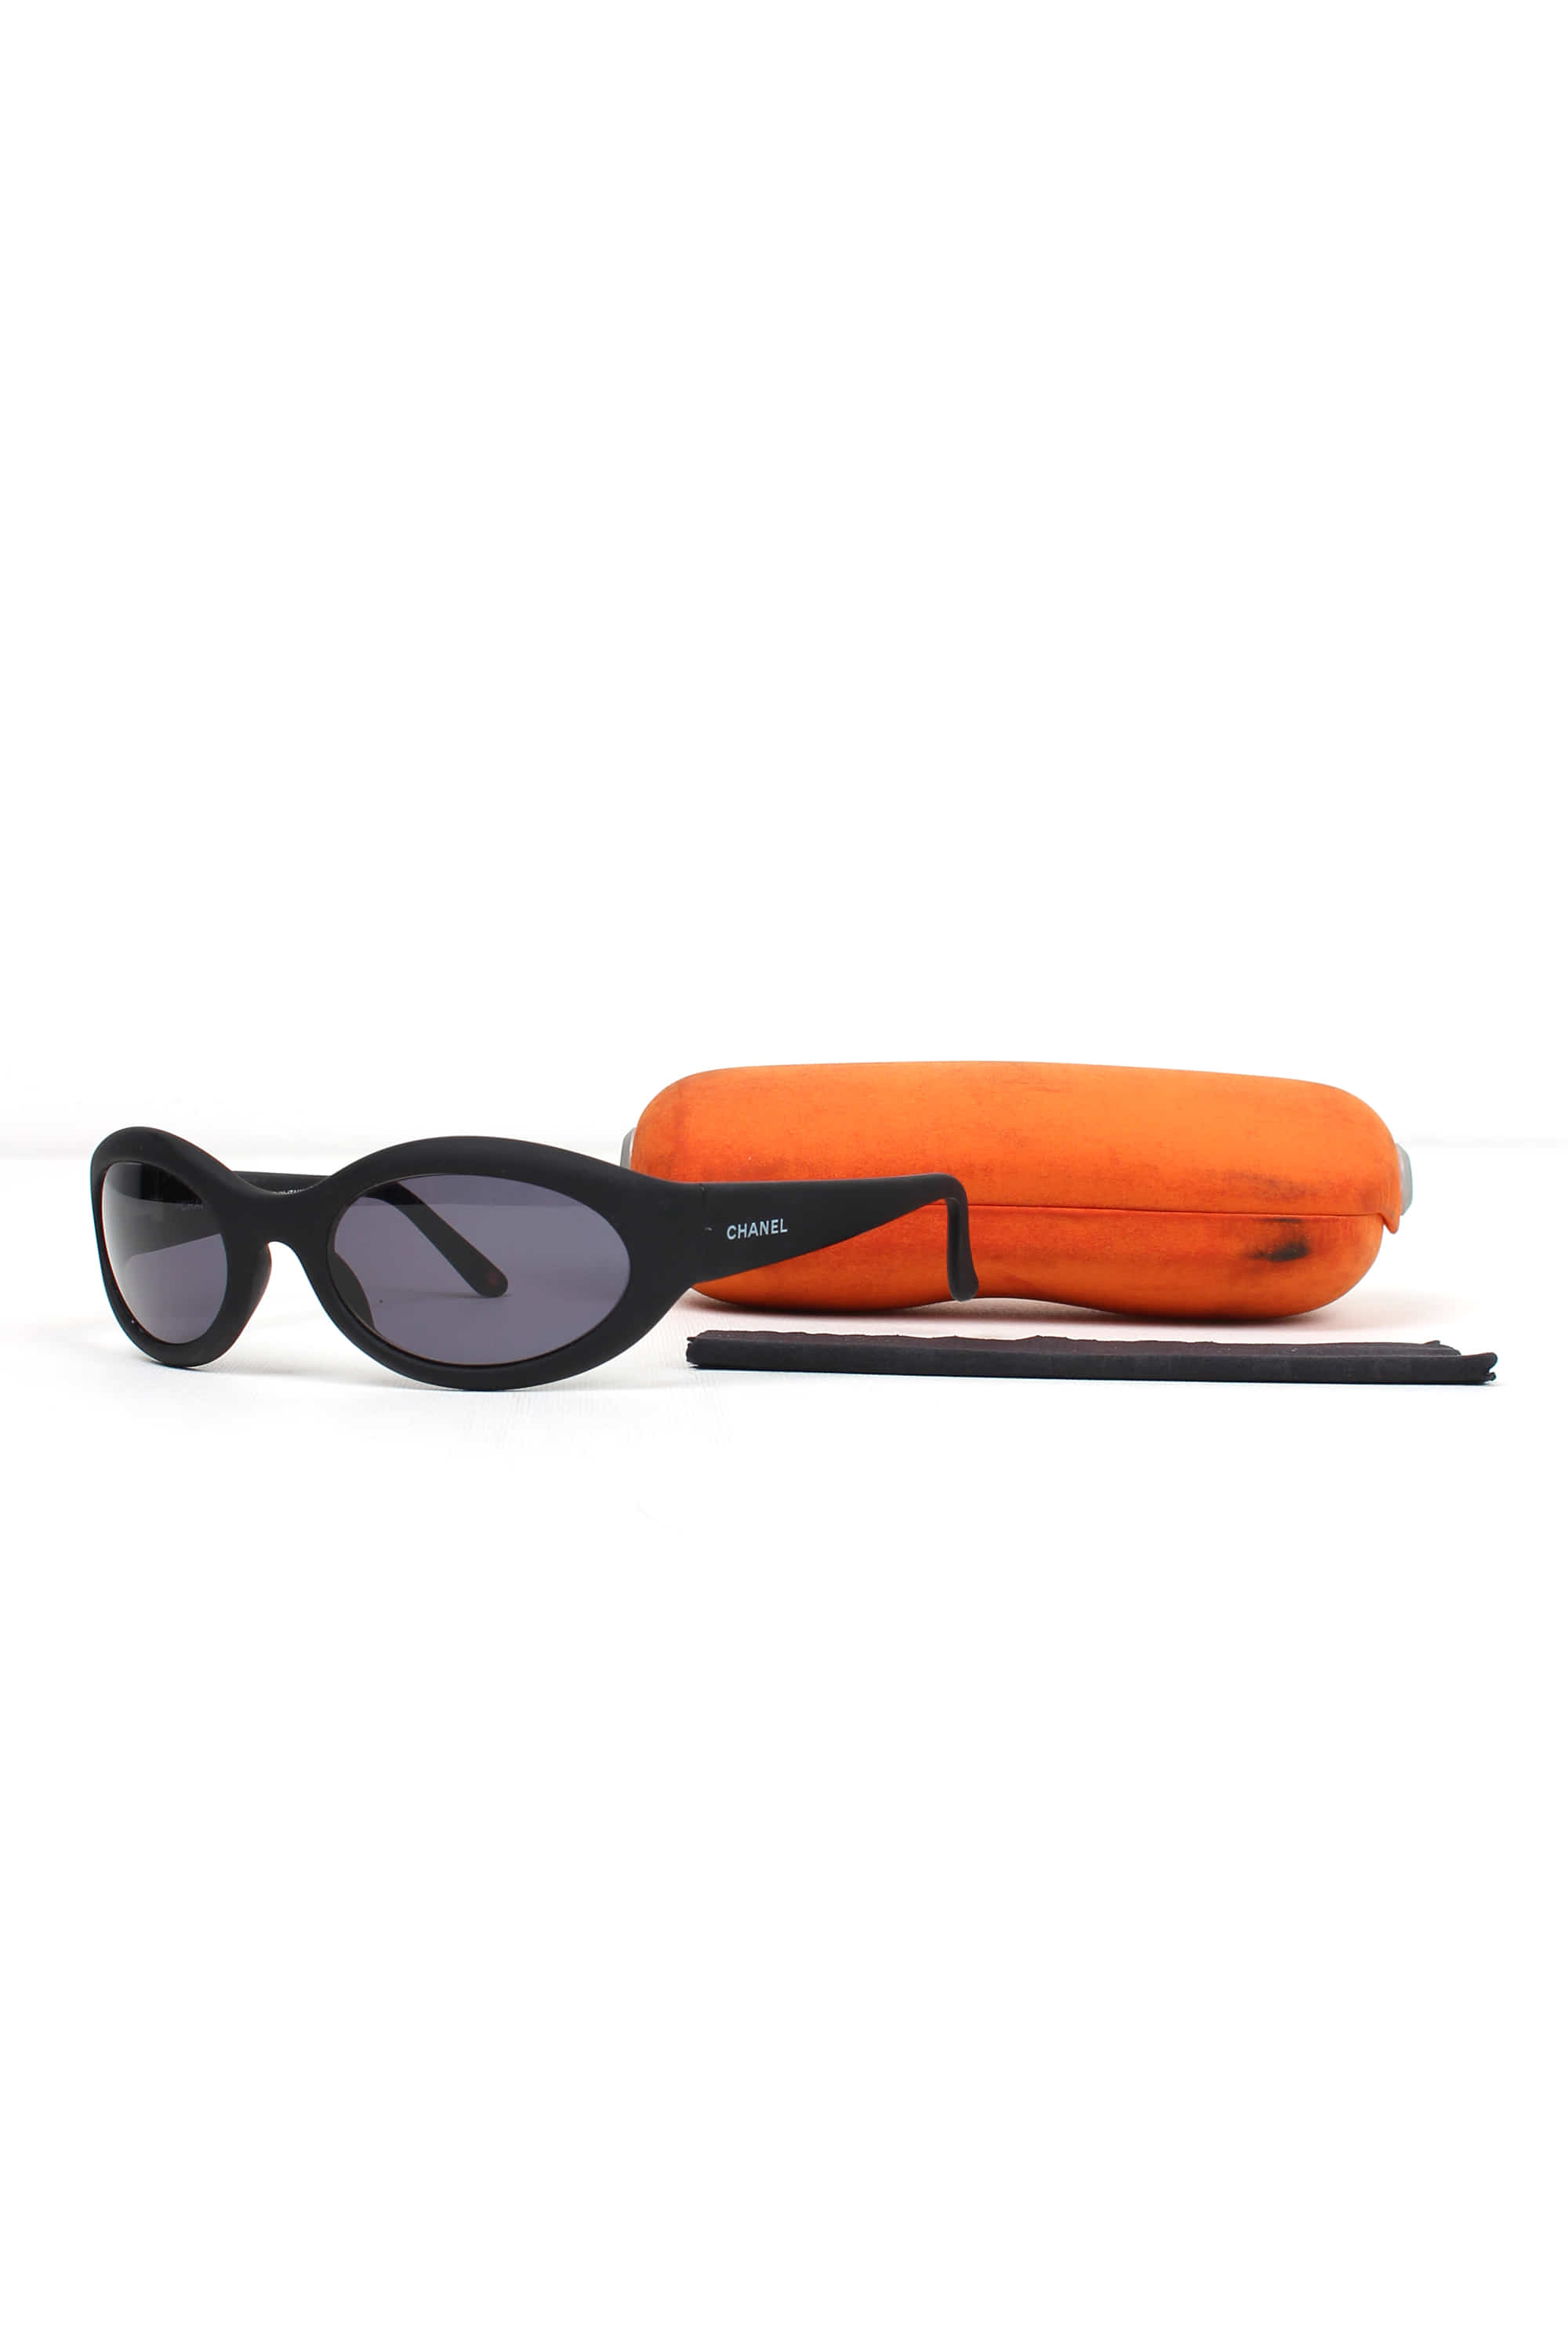 CHANEL 5017 oval cello sporty sunglasses